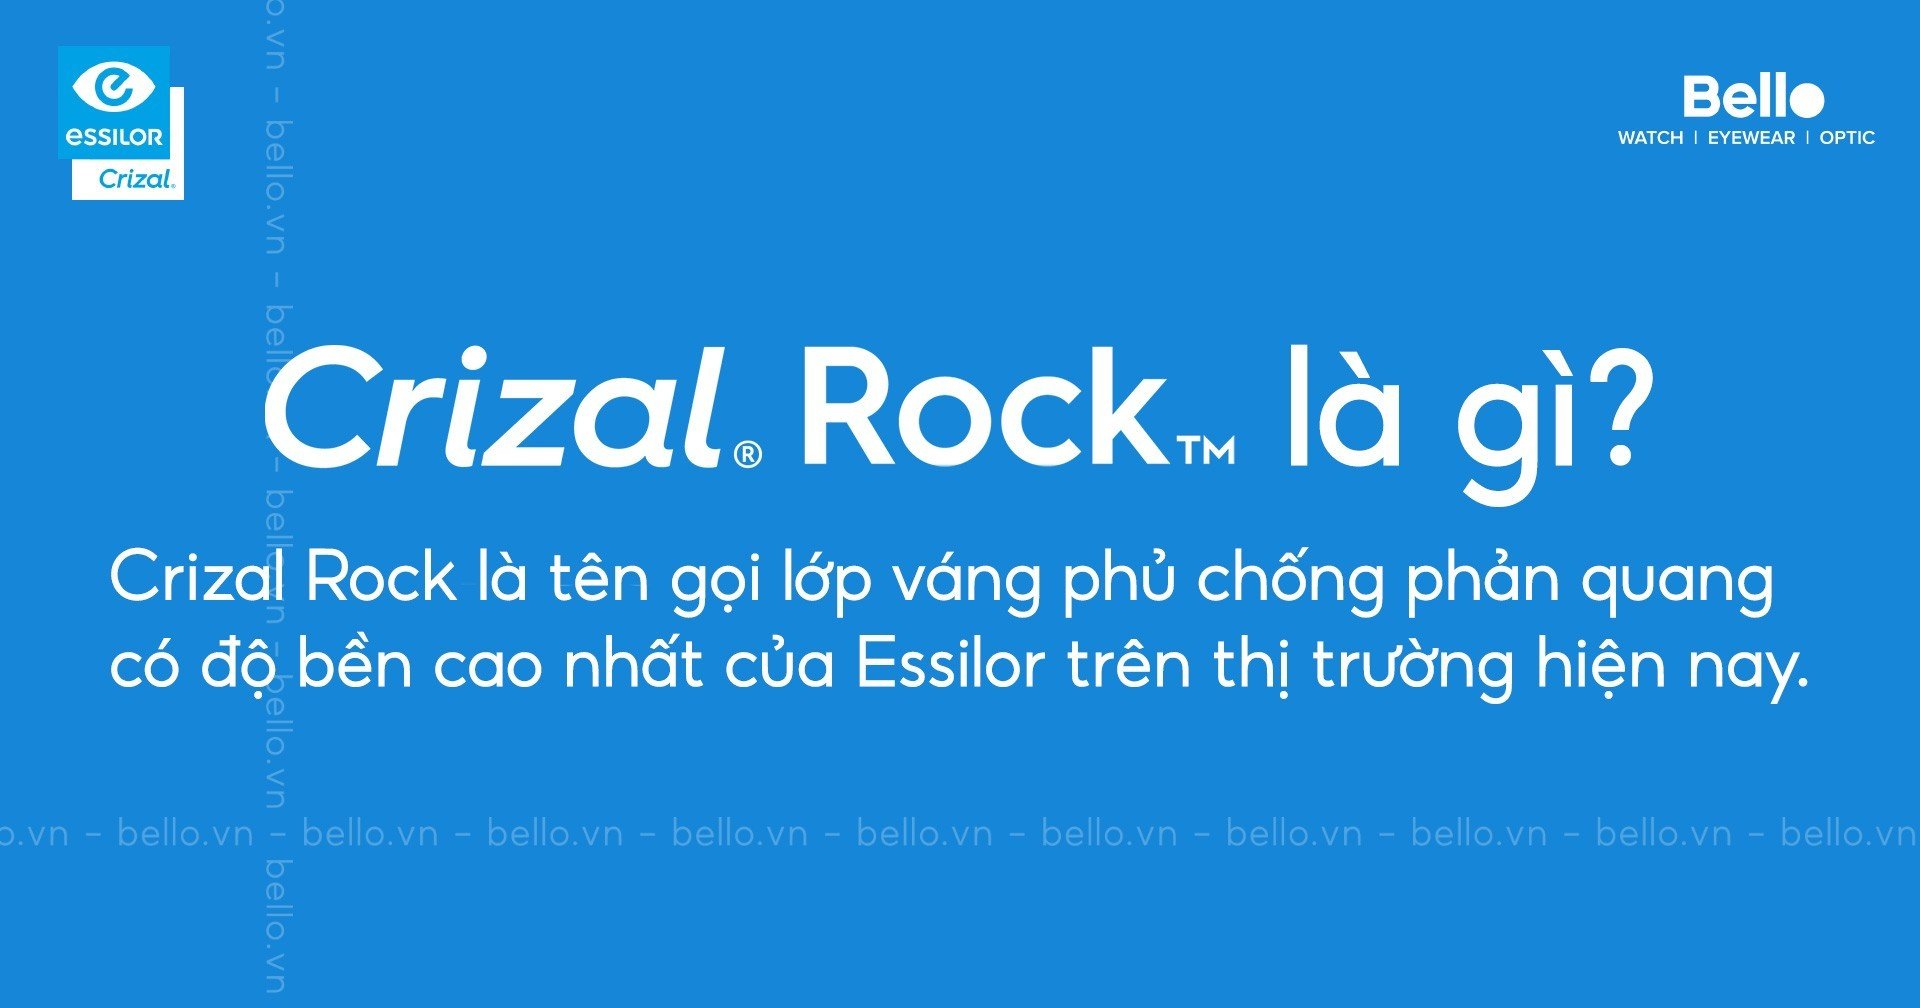 Crizal Rock là gì?